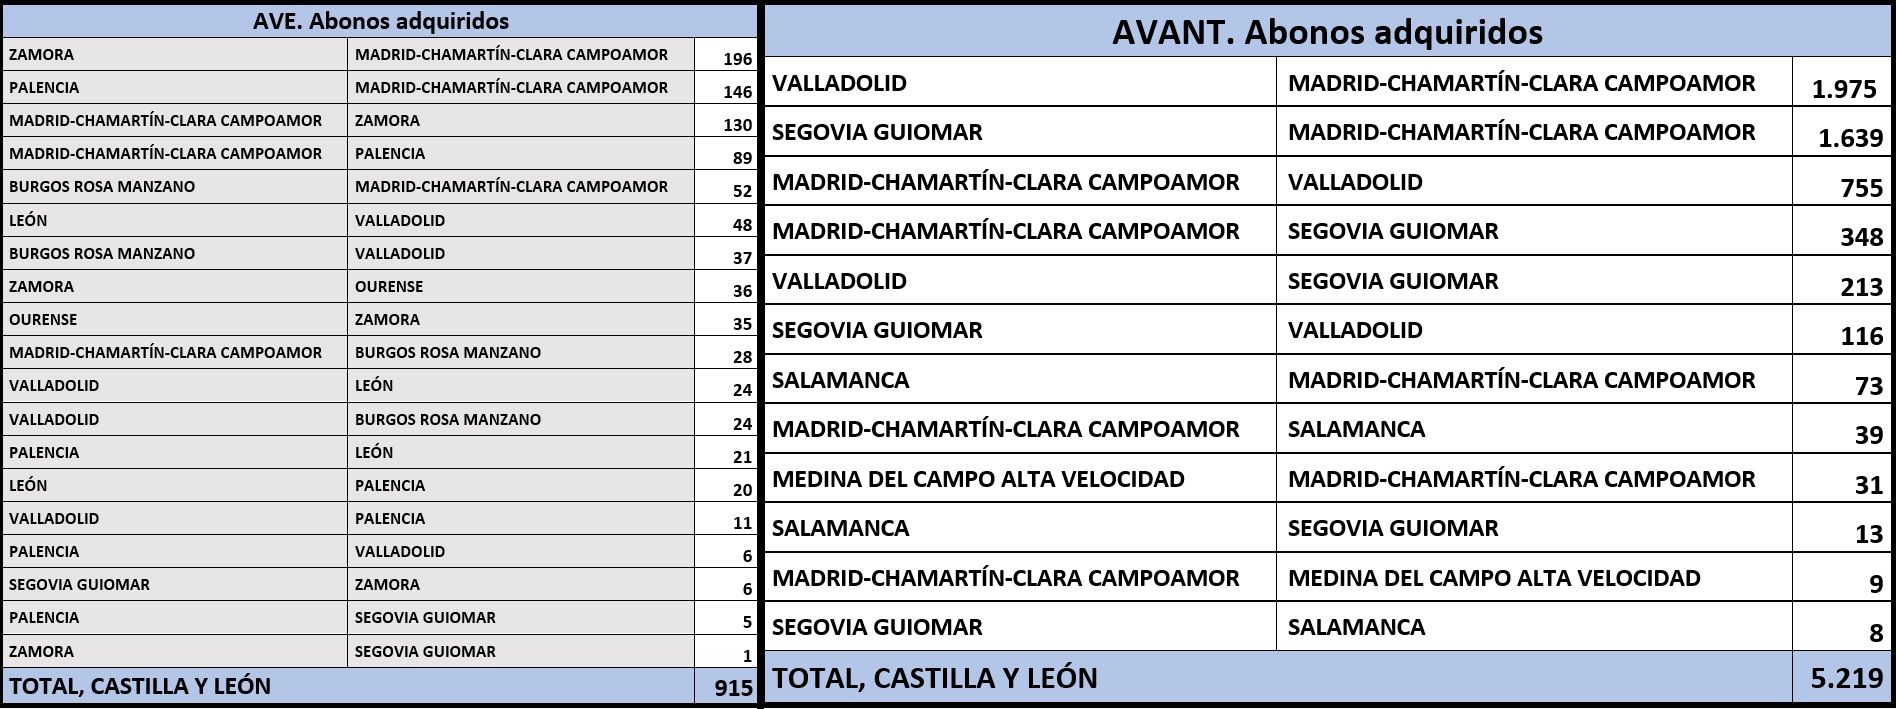 Bonos AVE y Avant adquiridos en Castilla y León. Zamora ocupa ya el tercer puesto, tras Valladolid y Segovia